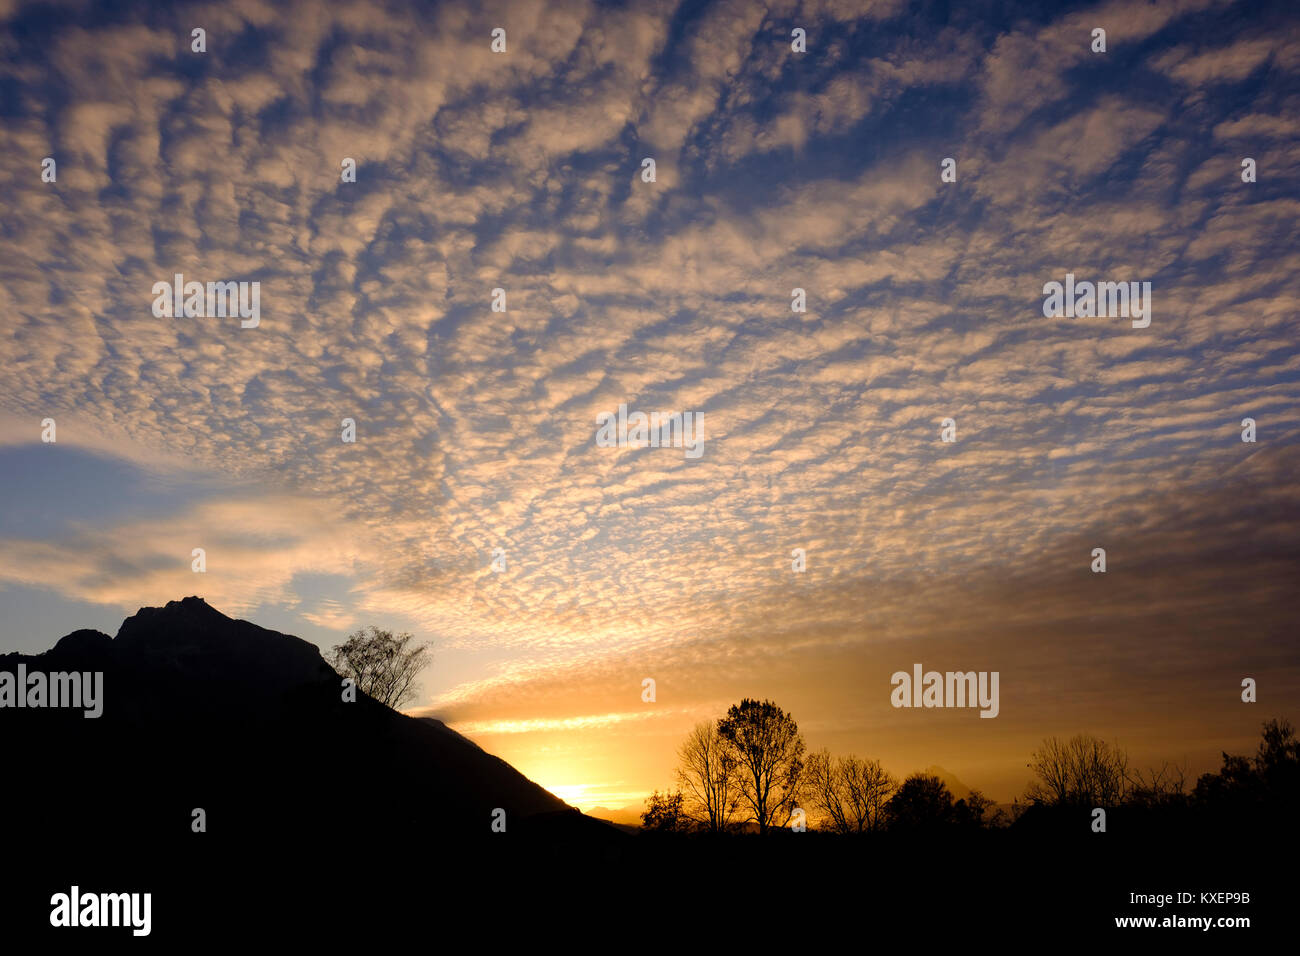 Nuvole di pecora (Altocumulus) al crepuscolo,sulla sinistra la sagoma del monte Untersberg,Salisburgo, Austria Foto Stock